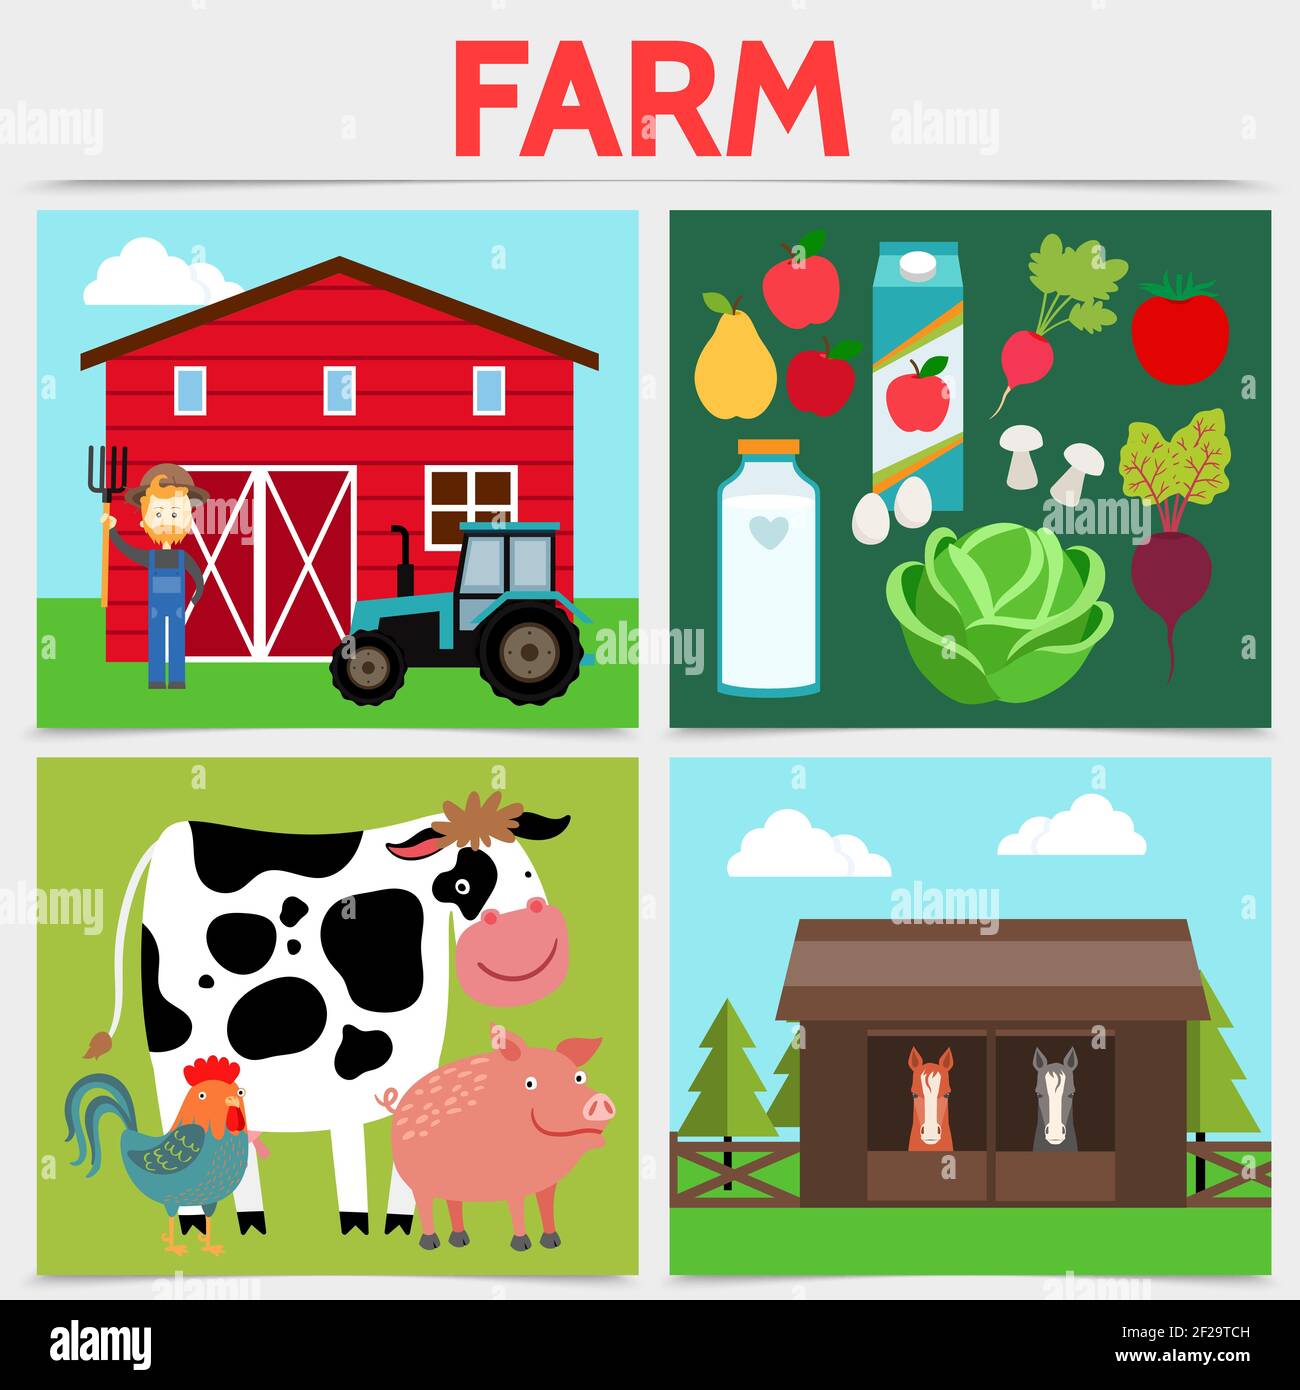 Concept de place agricole plate colorée avec ferme de tracteur de ferme de vache poule porc chevaux légumes fruits lait bouteille jus paquet isolé vecteur illustrat Illustration de Vecteur